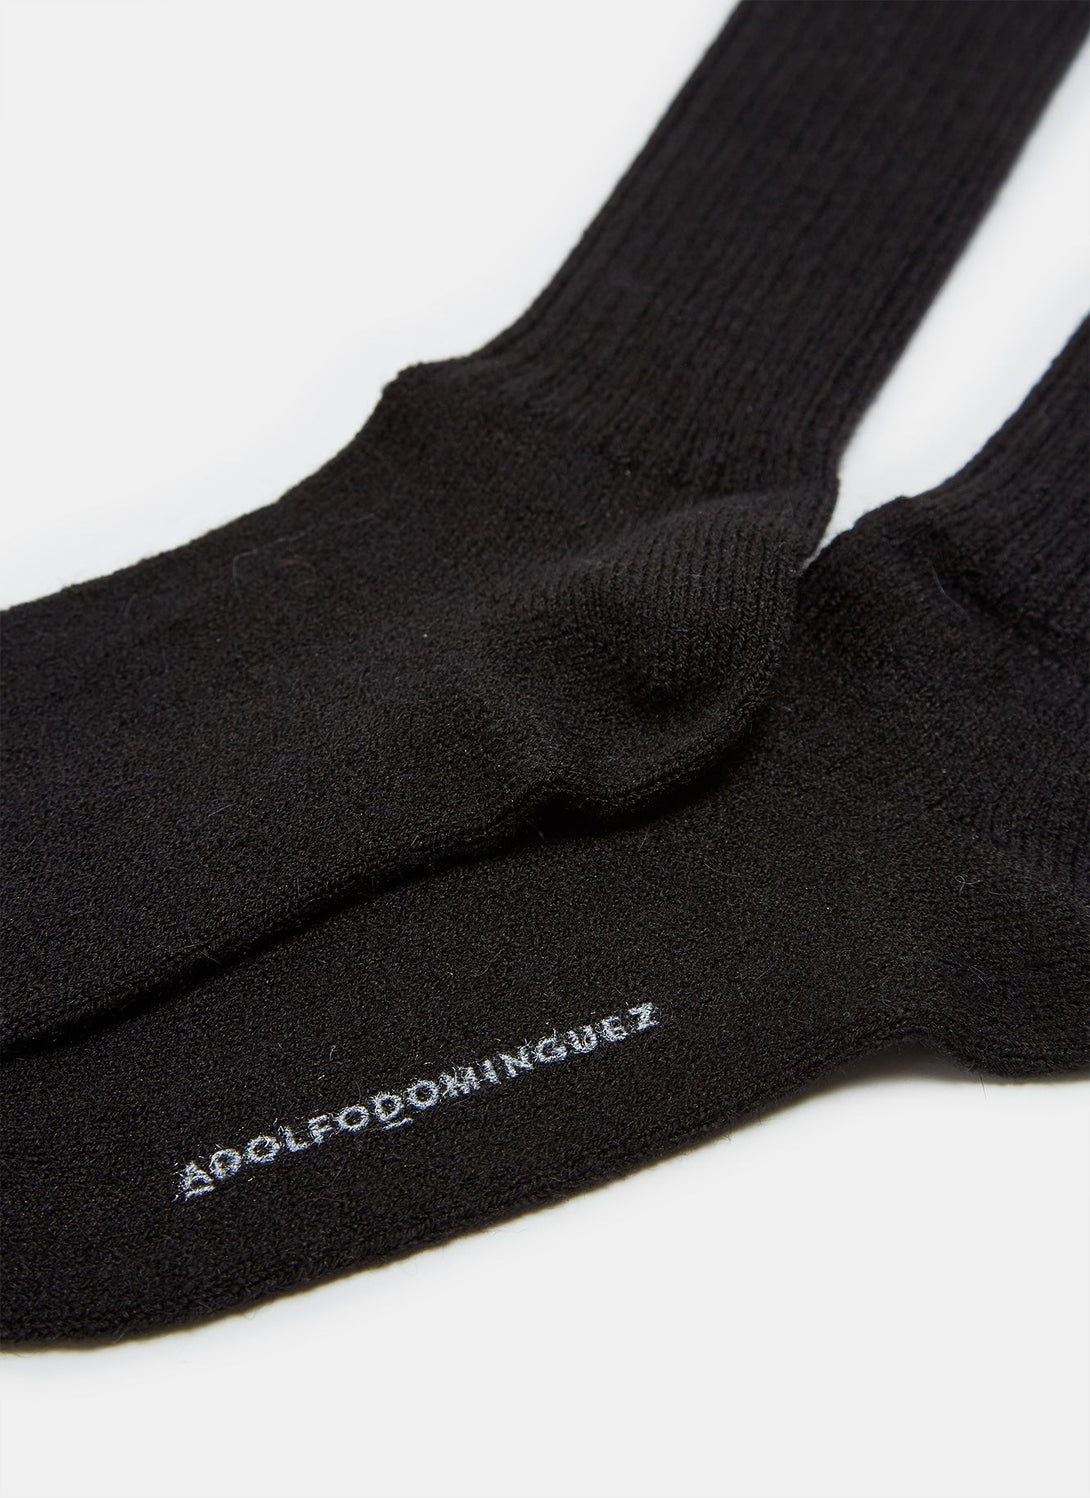 Men Socks | Black Alpaca Ribbed Knit Socks by Spanish designer Adolfo Dominguez